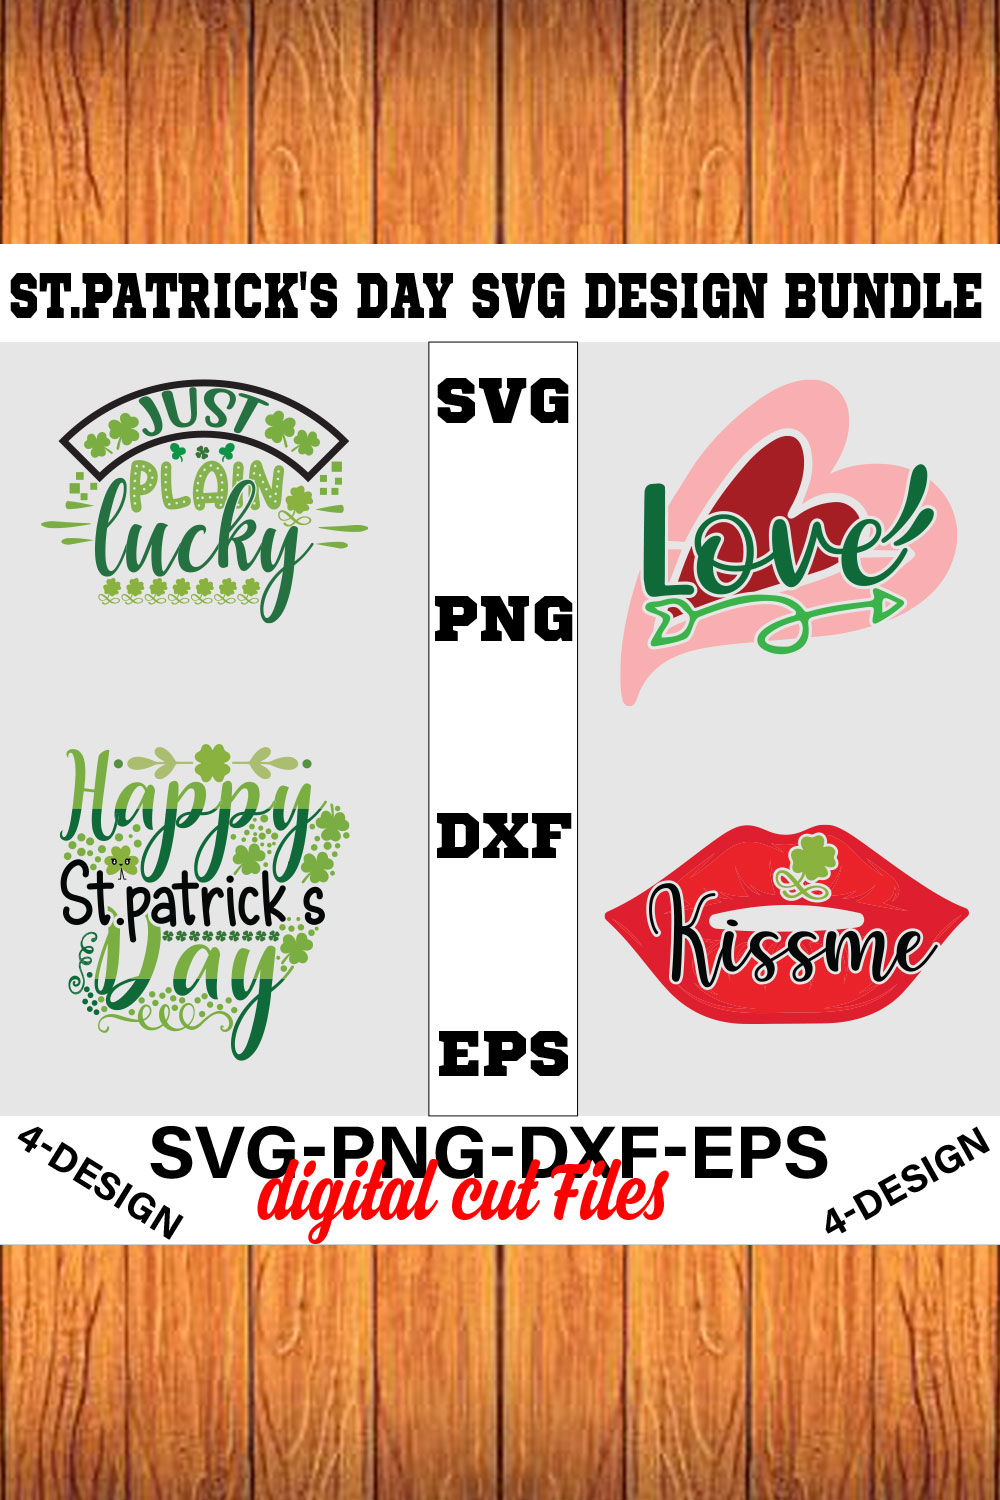 Stpatrick's Day Svg Design Bundle Vol-02 pinterest preview image.